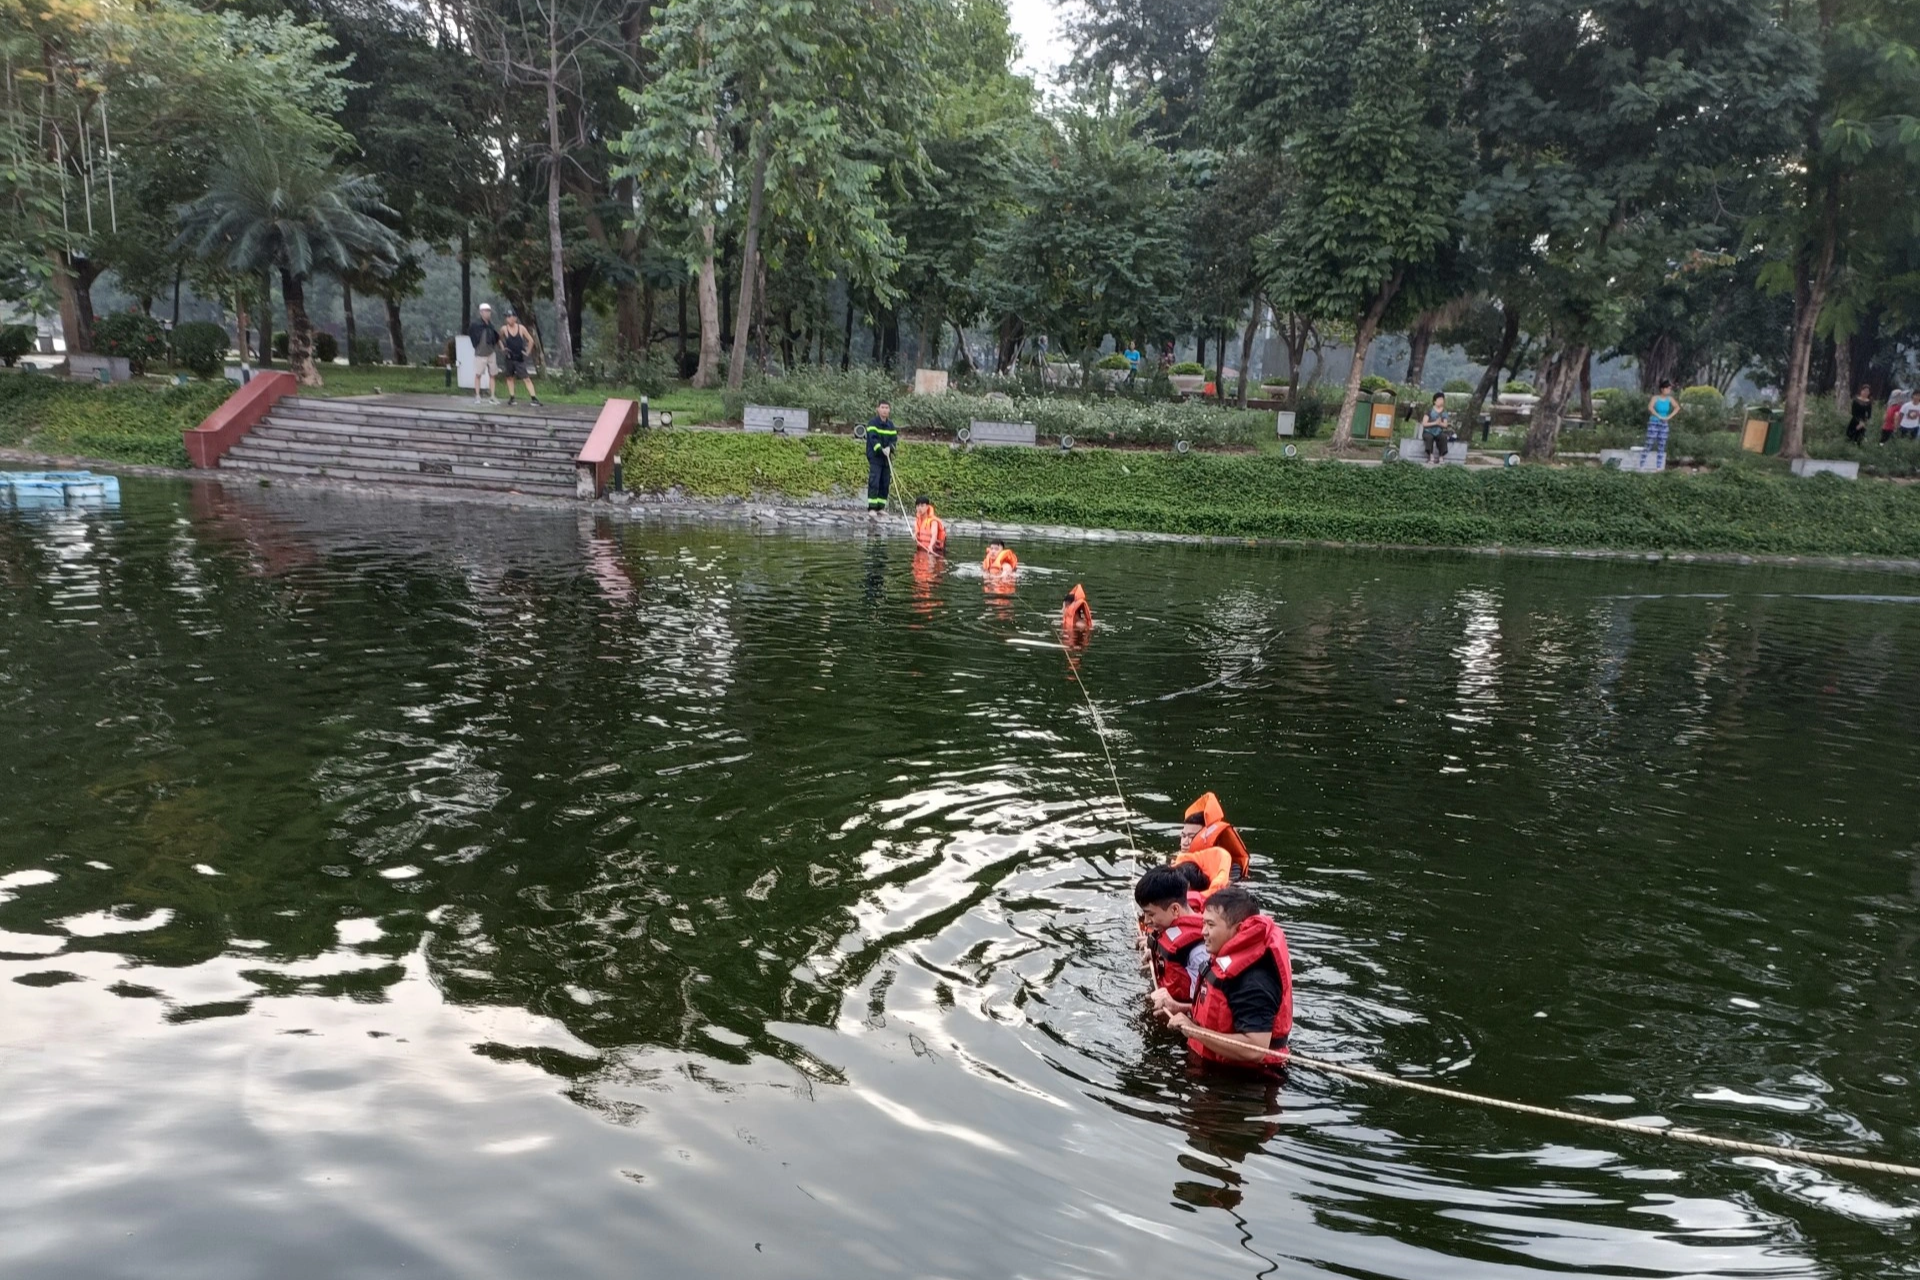 Bé trai tử vong dưới hồ Bảy Mẫu trong Công viên Thống Nhất - 1